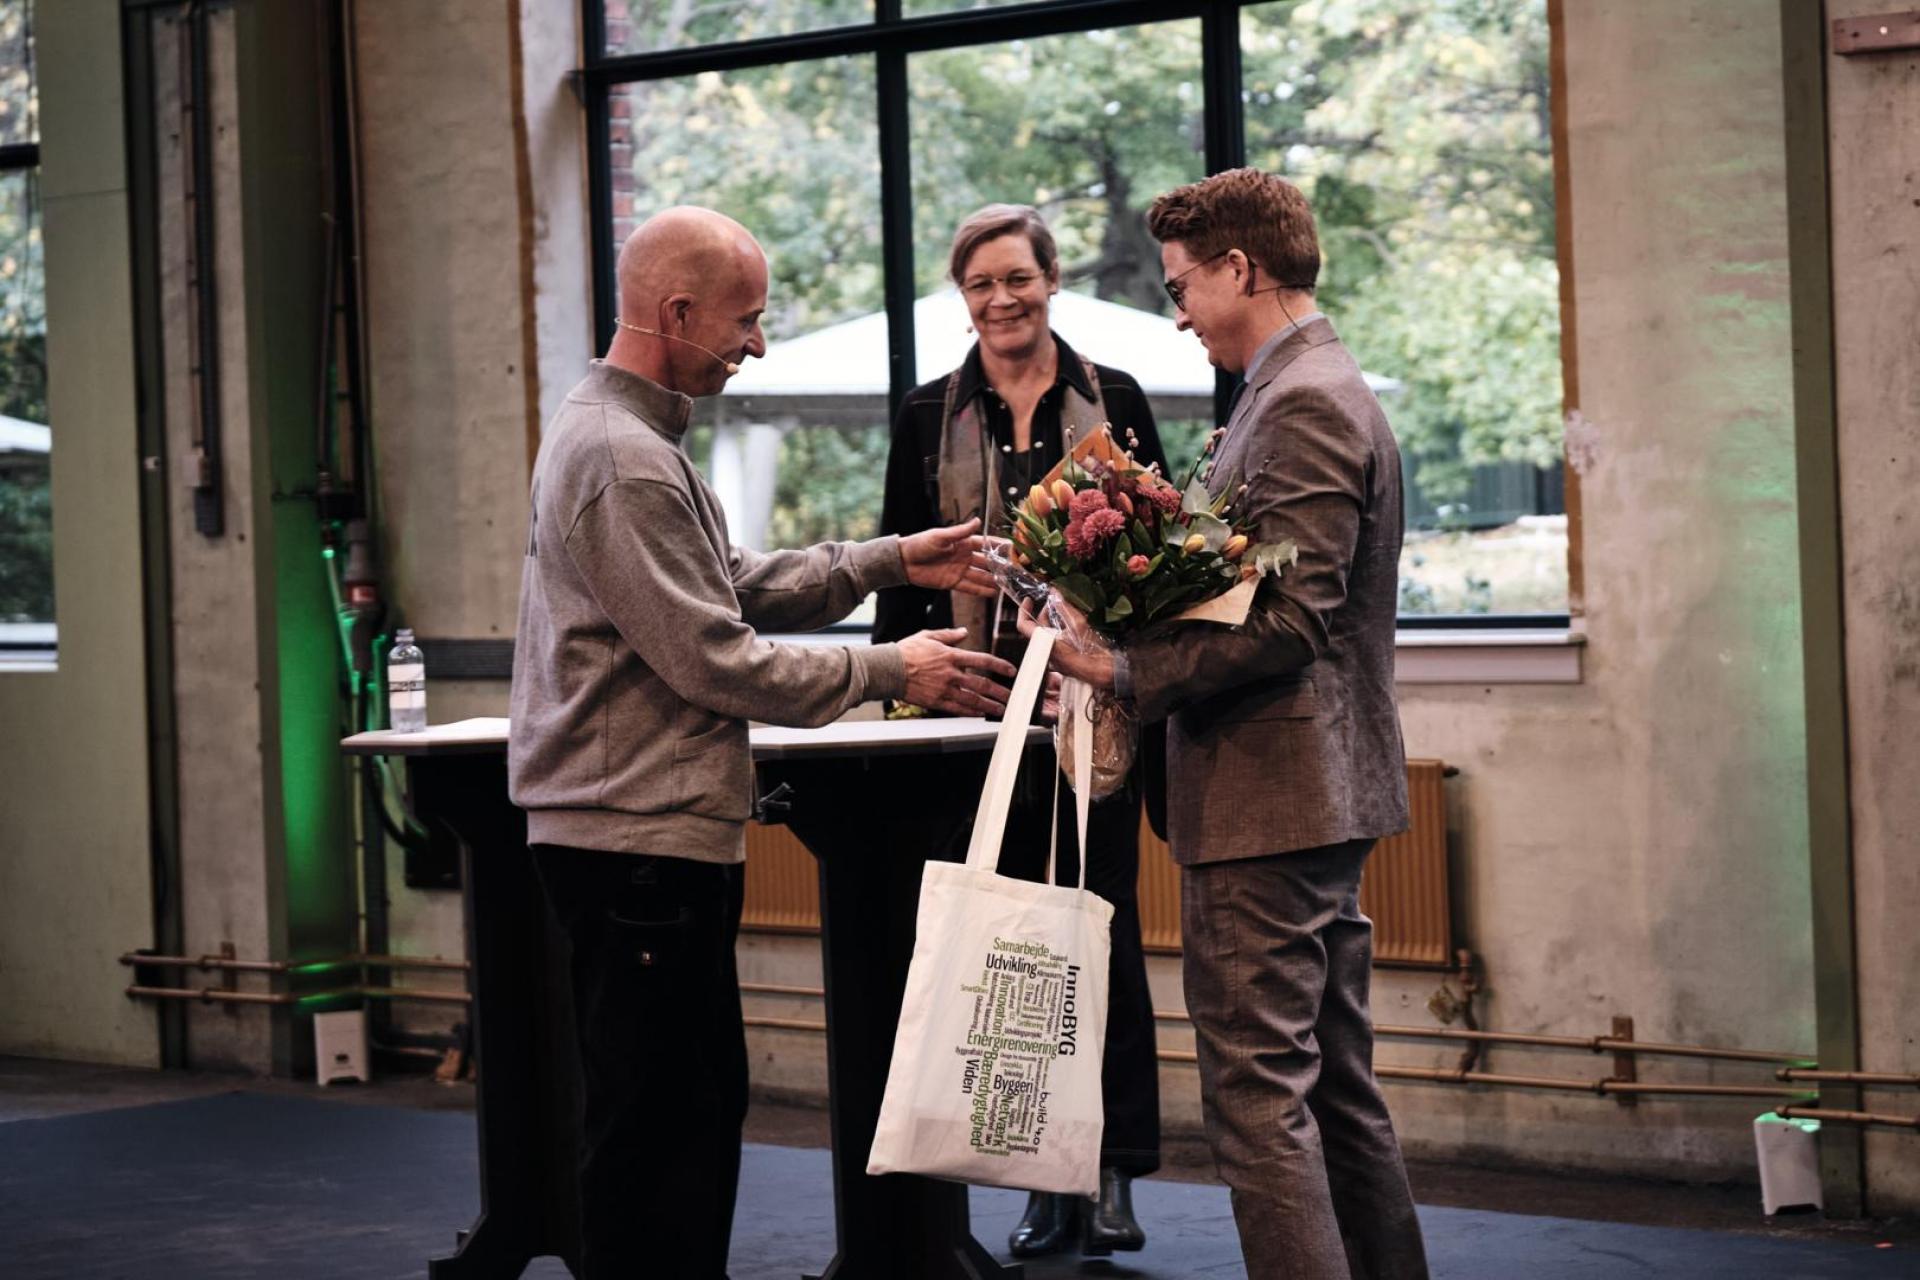 Direktør i EcoCocon Lars Keller modtager prisen af Lone Feifer og Jesper Pagh. Foto: Martin Høyer.